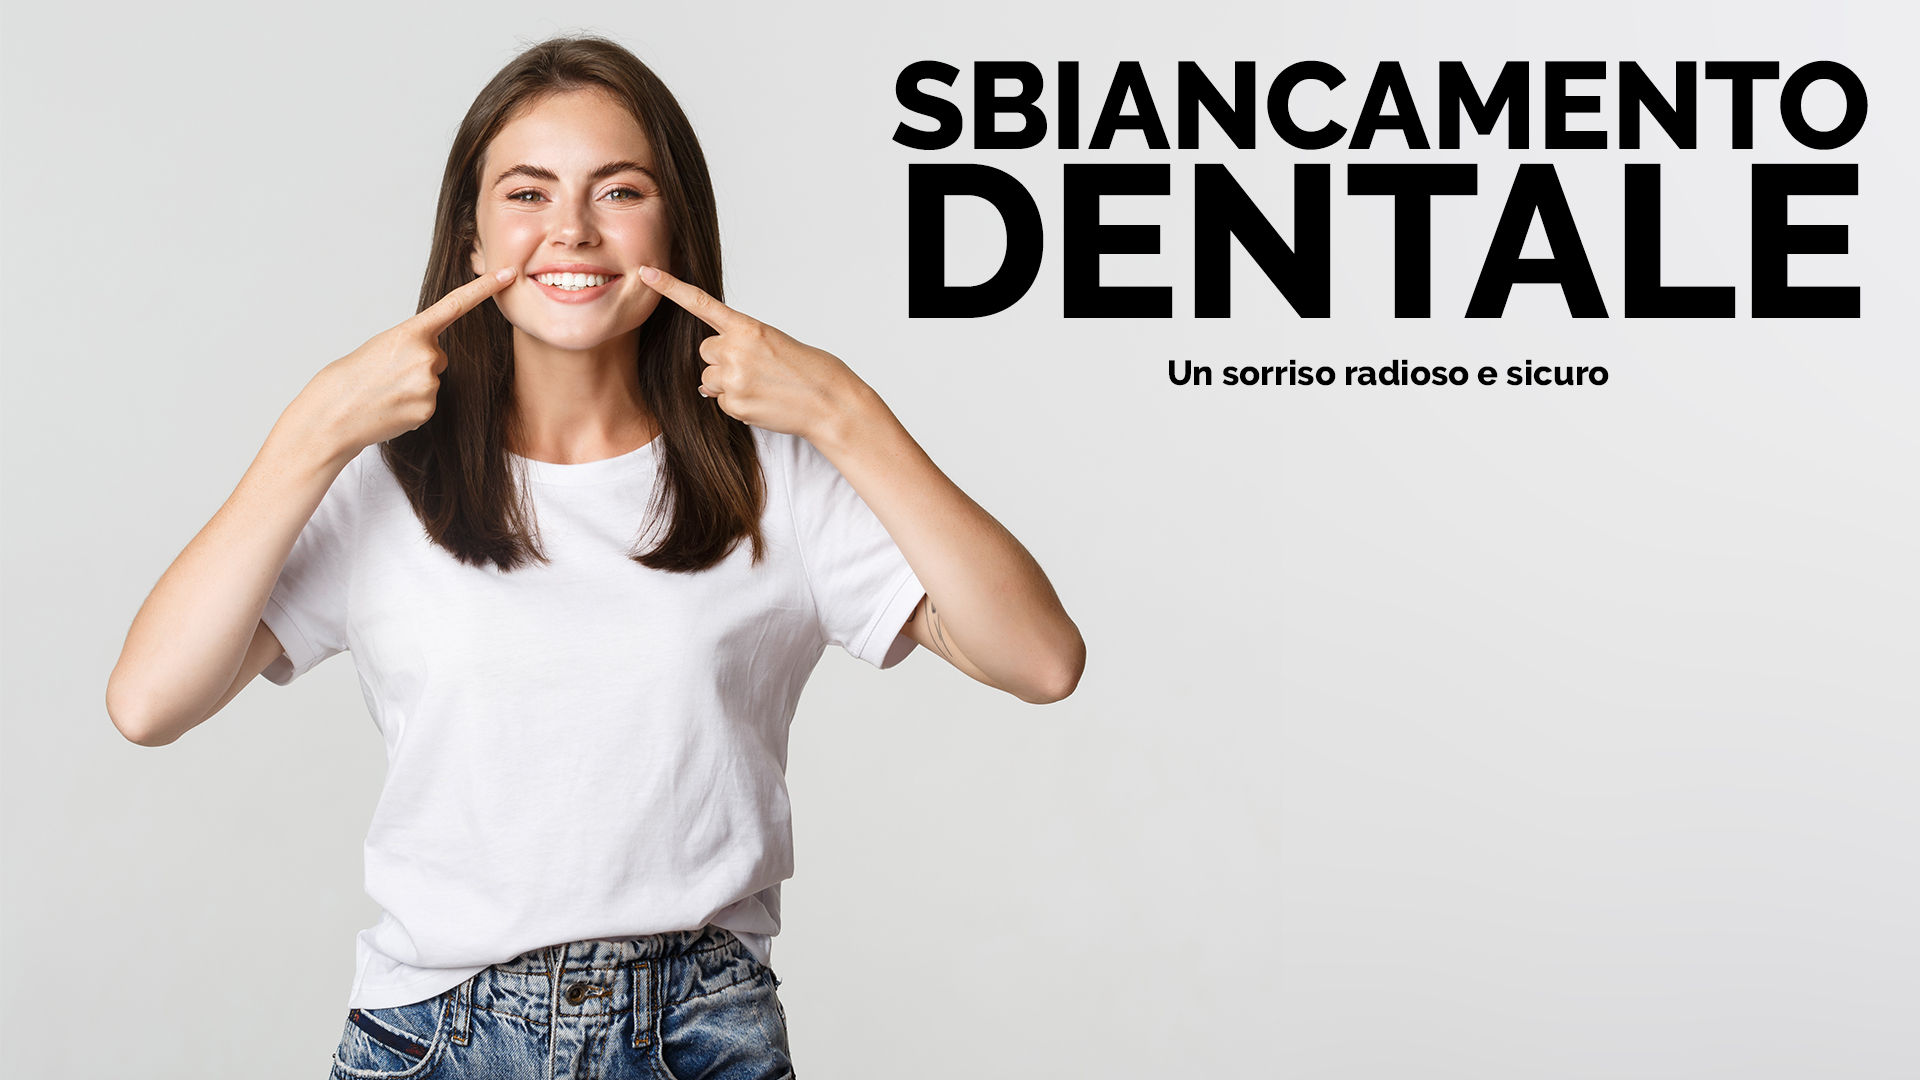 Sbiancamento Dentale: Un Sorriso Radioso e Sicuro